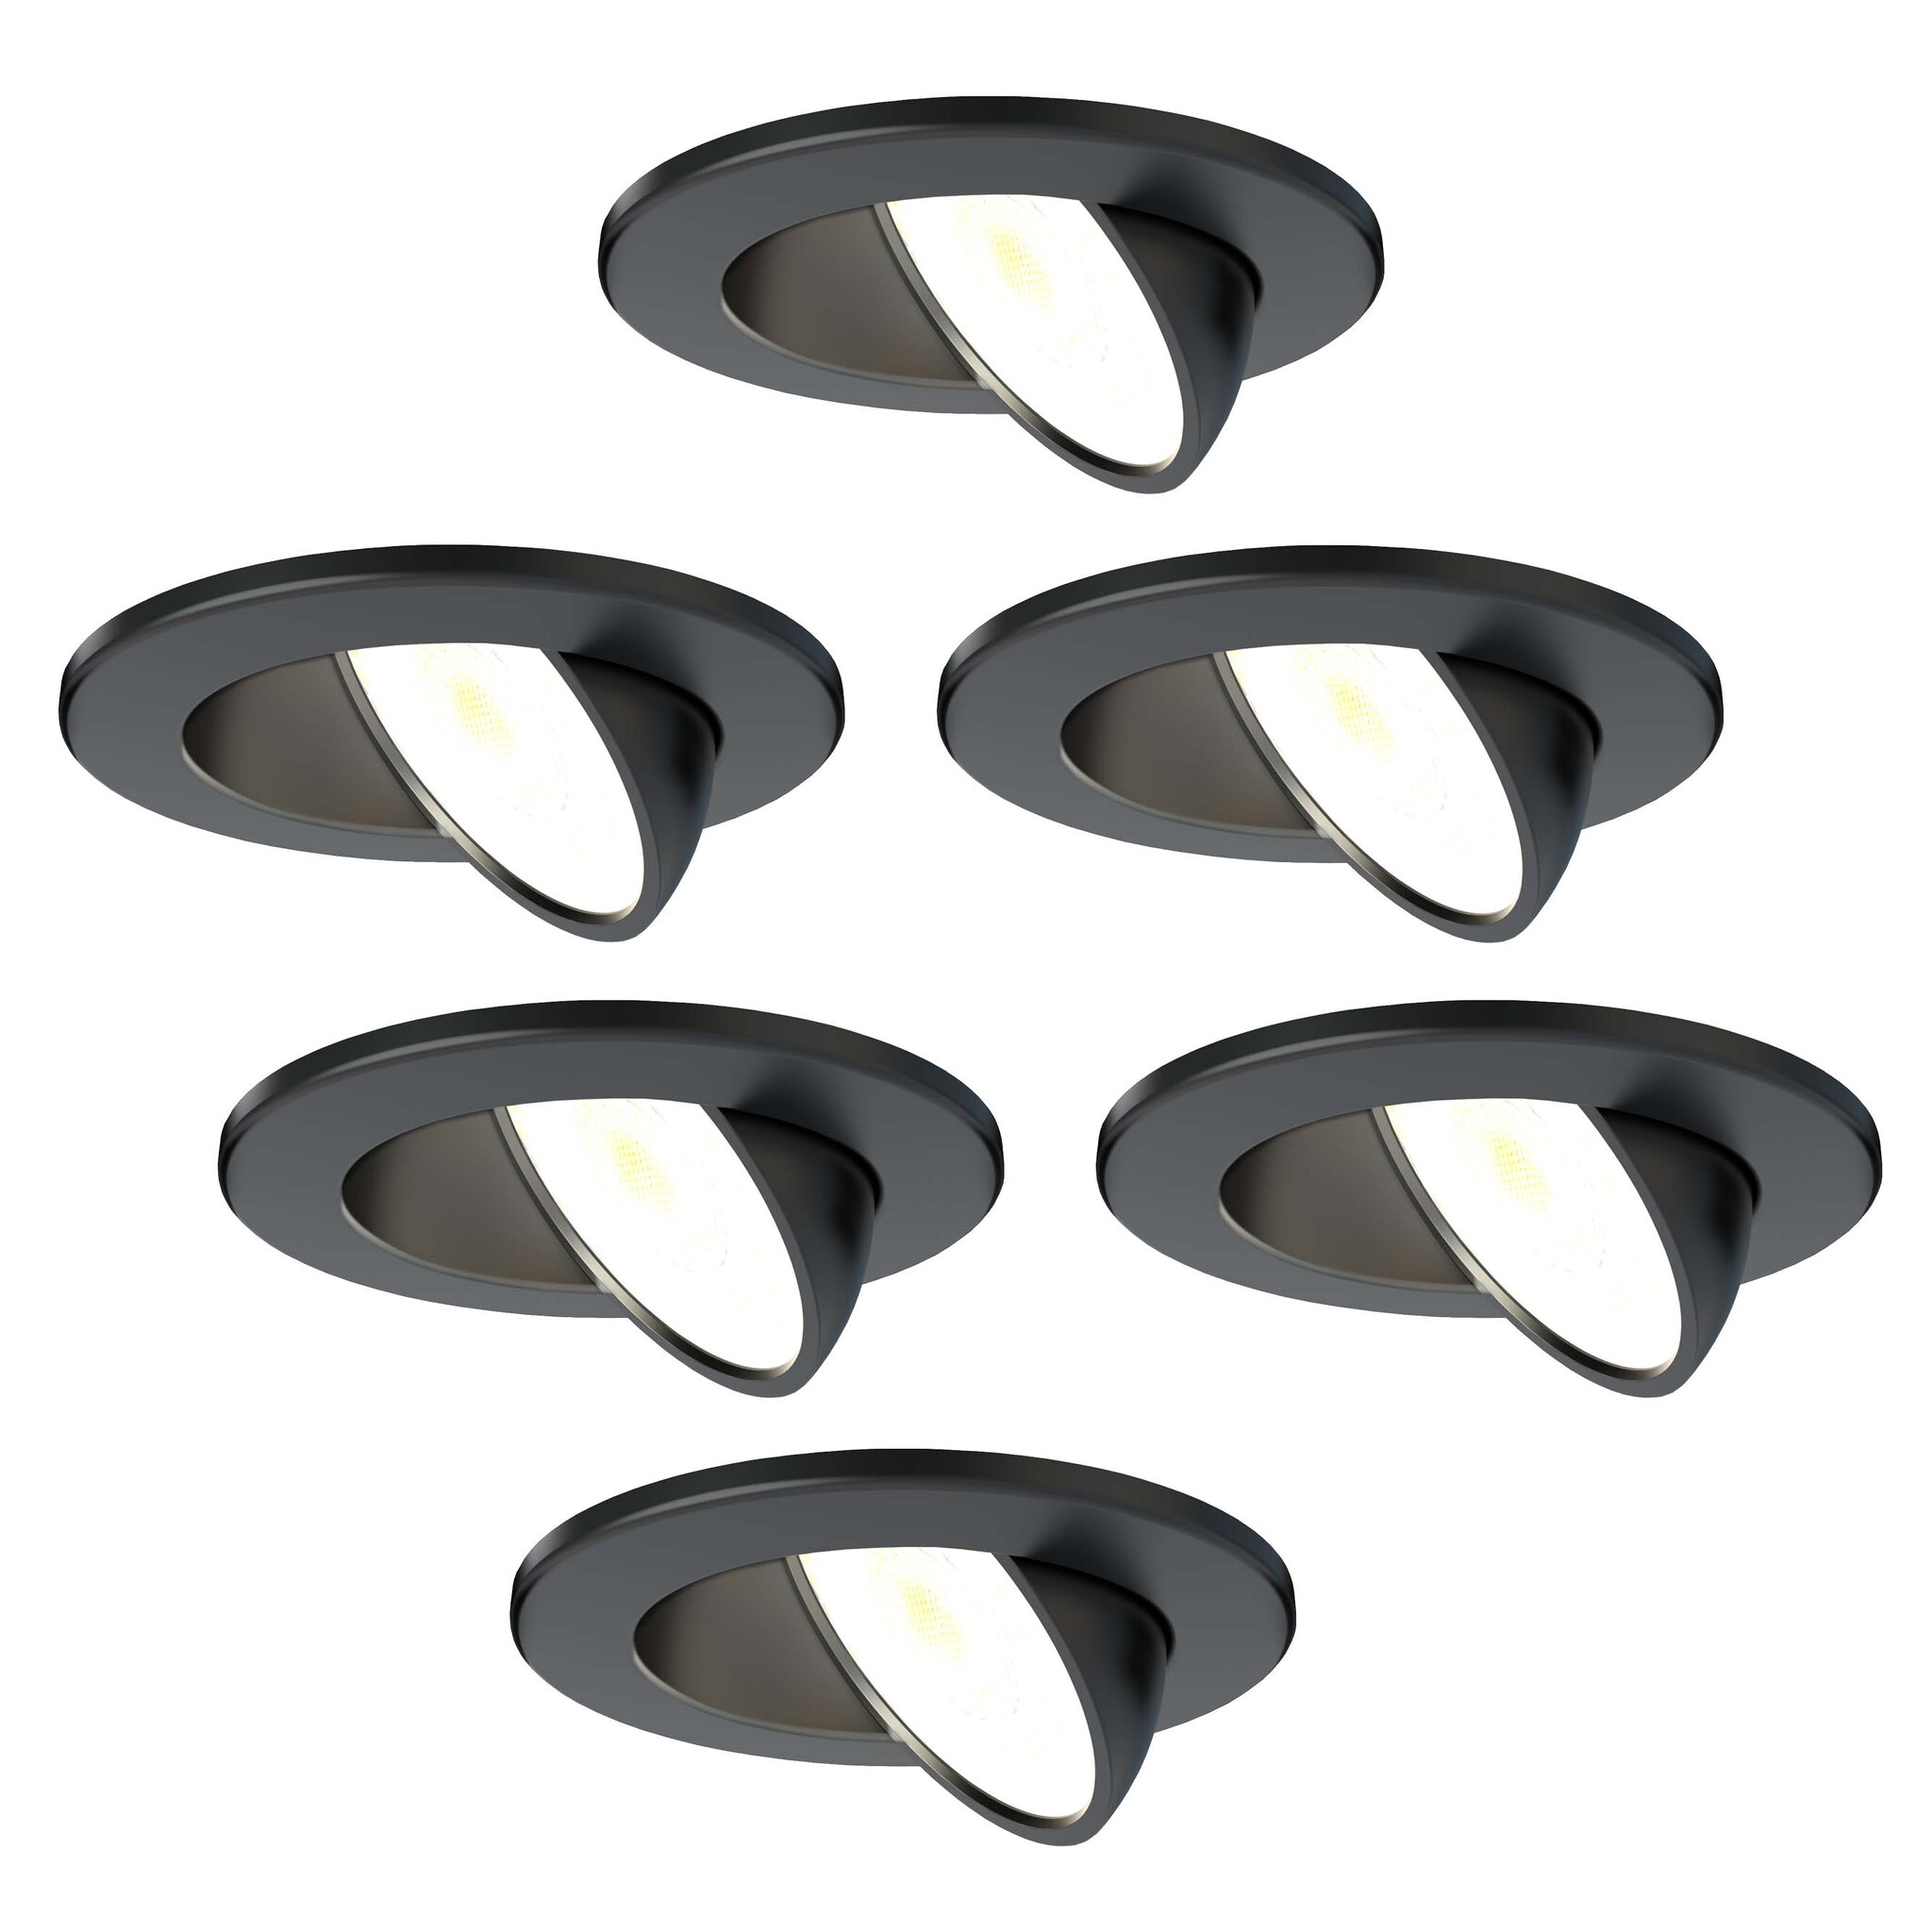 Conjunto de 4 Focos LED Empotrables 8W MILAN CCT IP65 IK07 Collar Cuadrado  Negro con Transformador